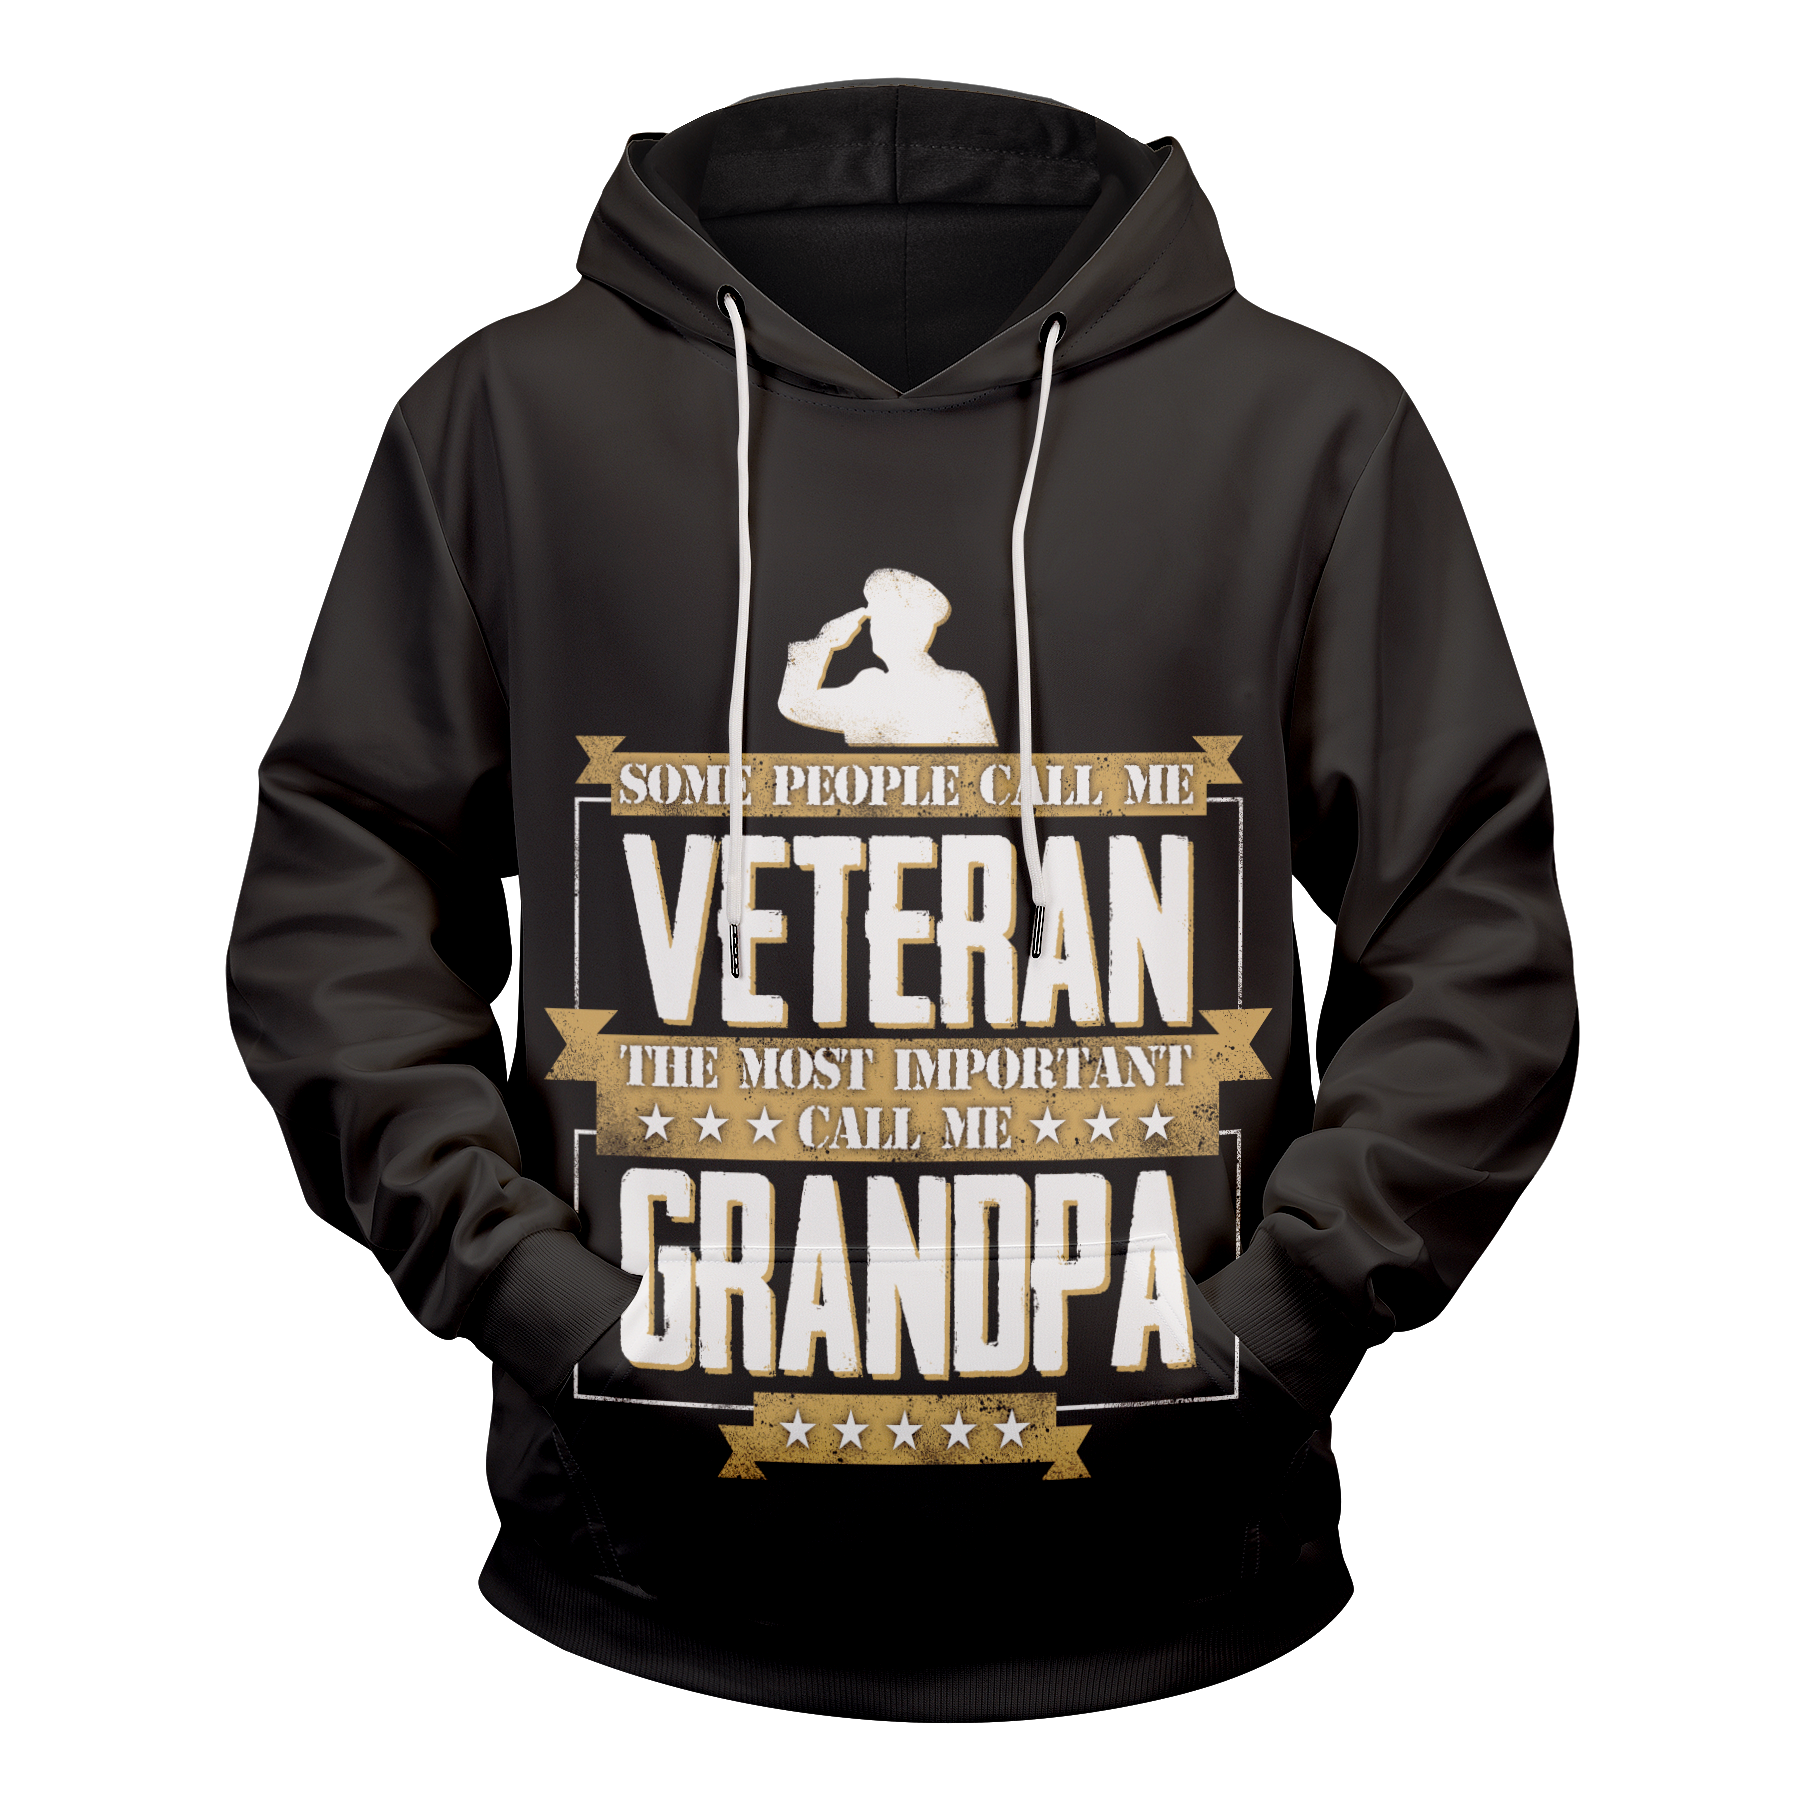 Veteran Grandpa Unisex Pullover Hoodie